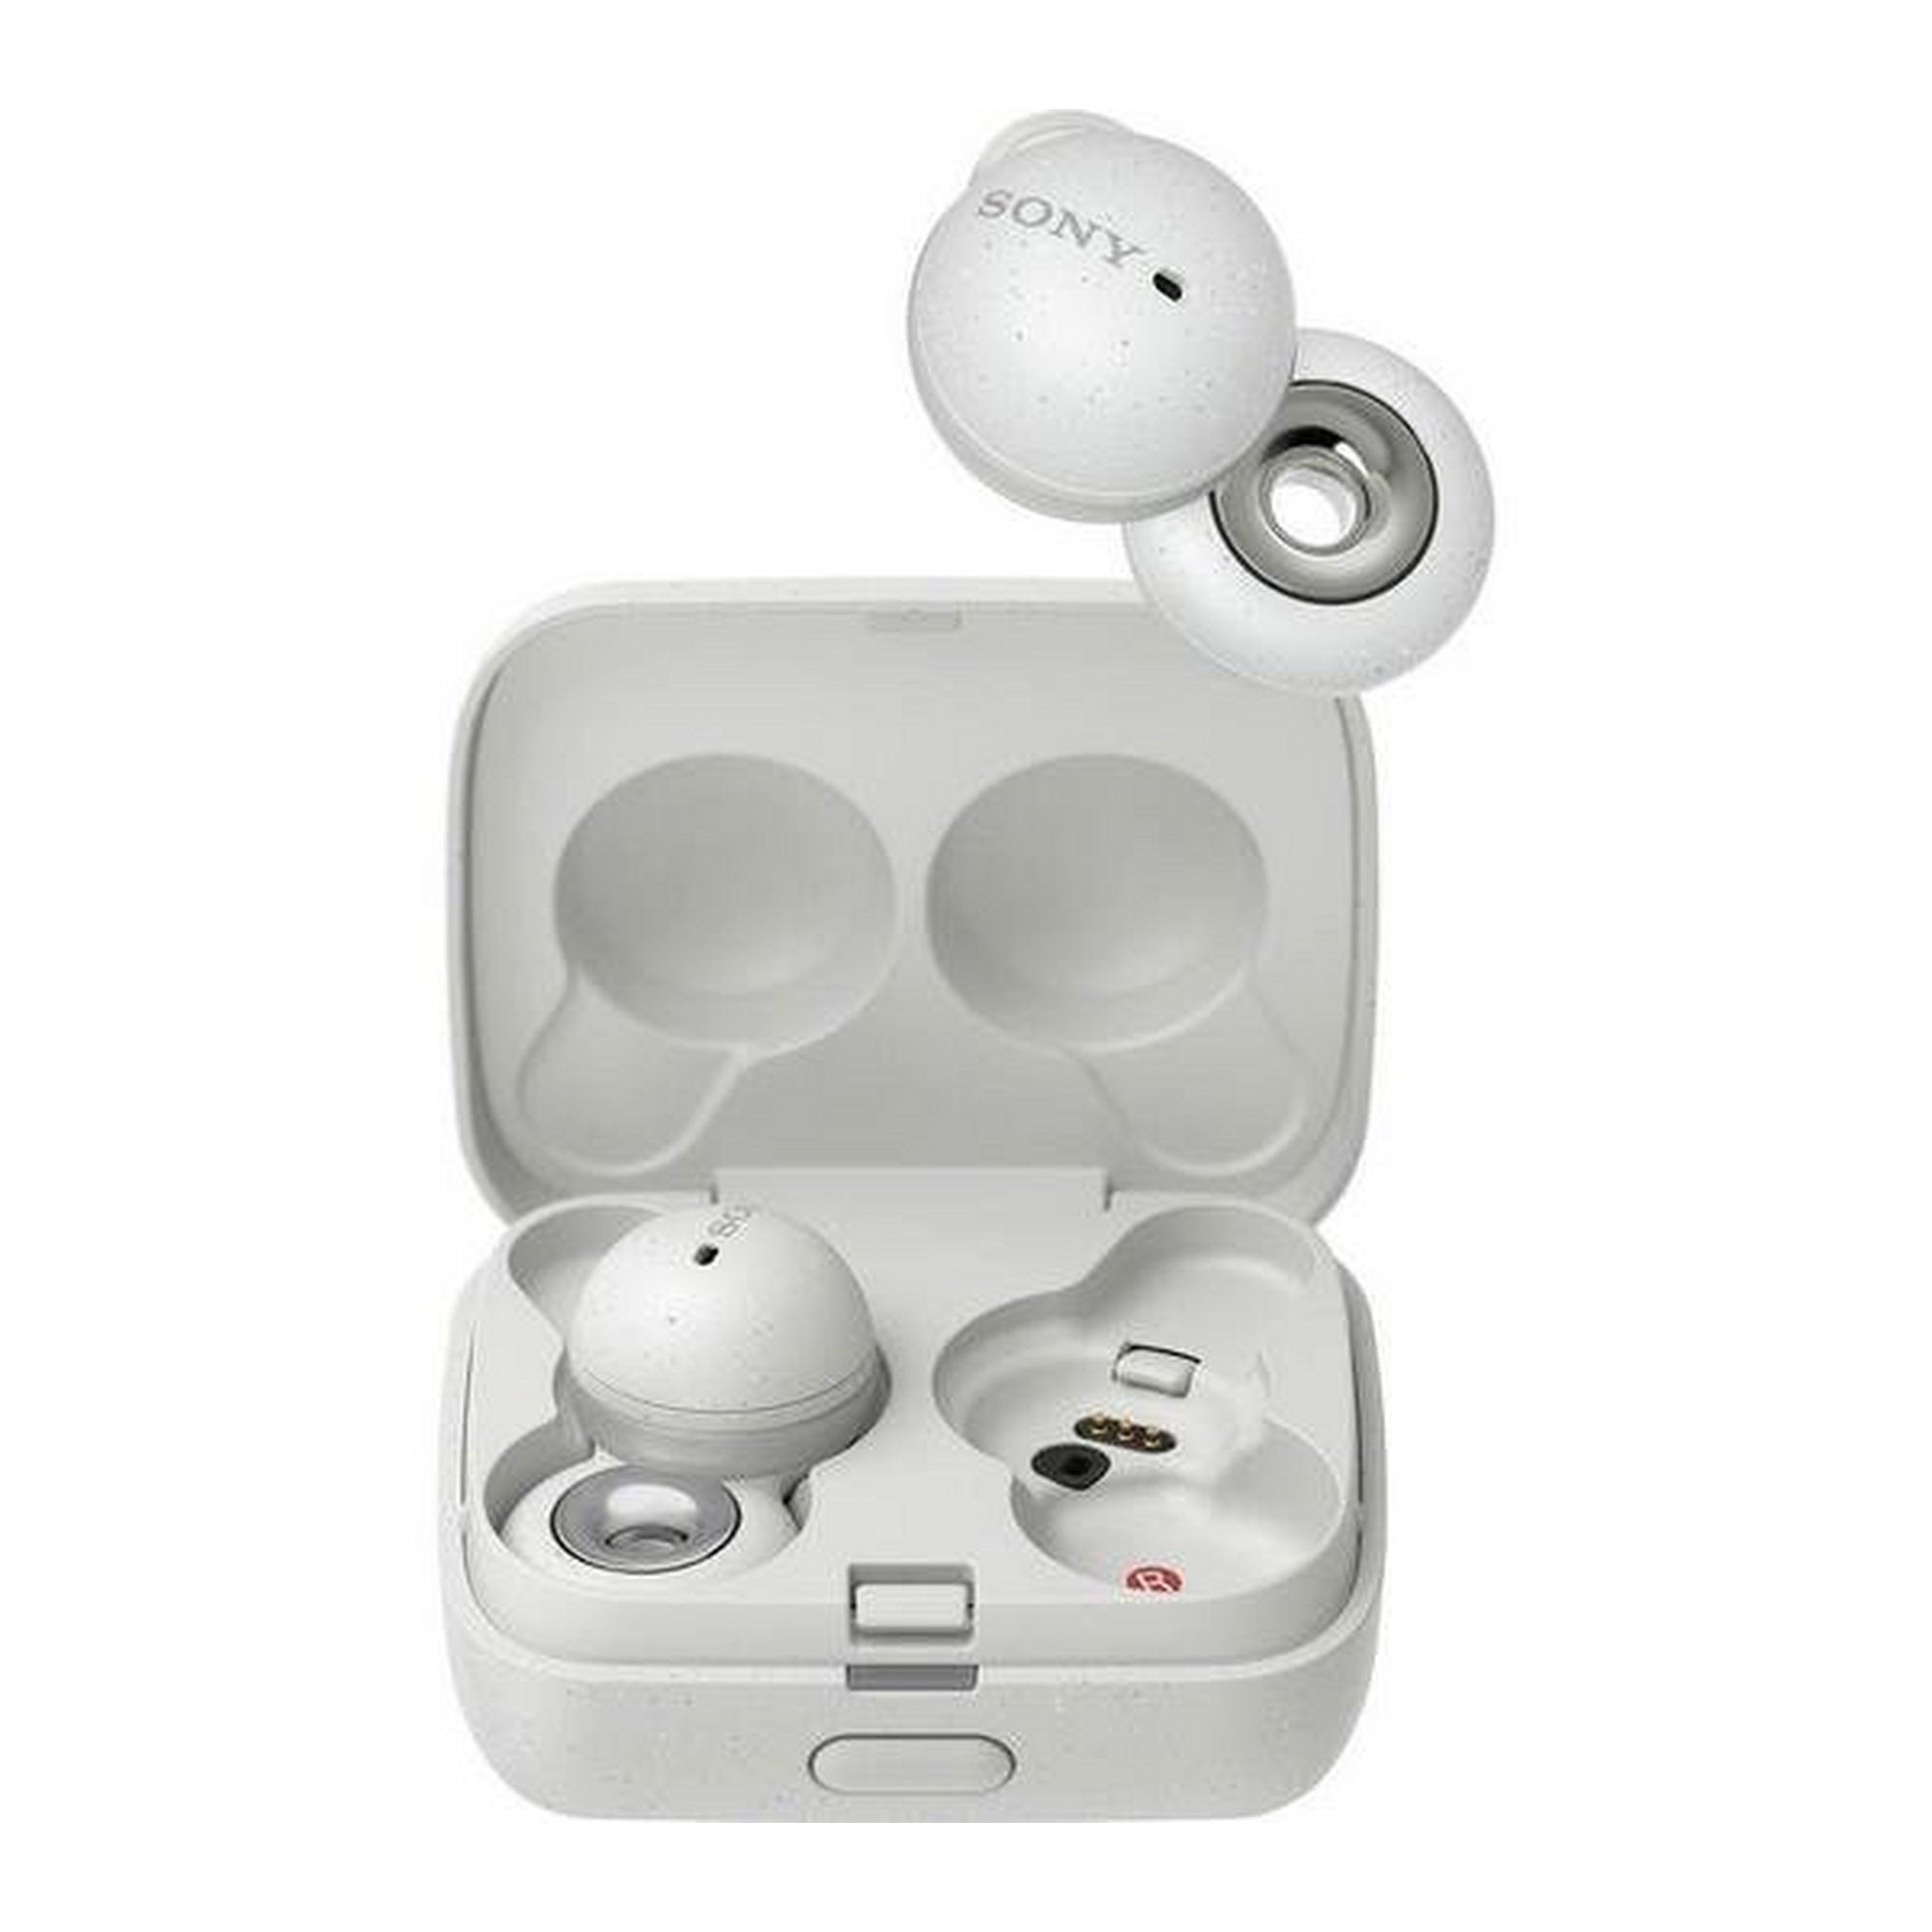 Sony Linkbuds Wireless Bluetooth Earbuds - White